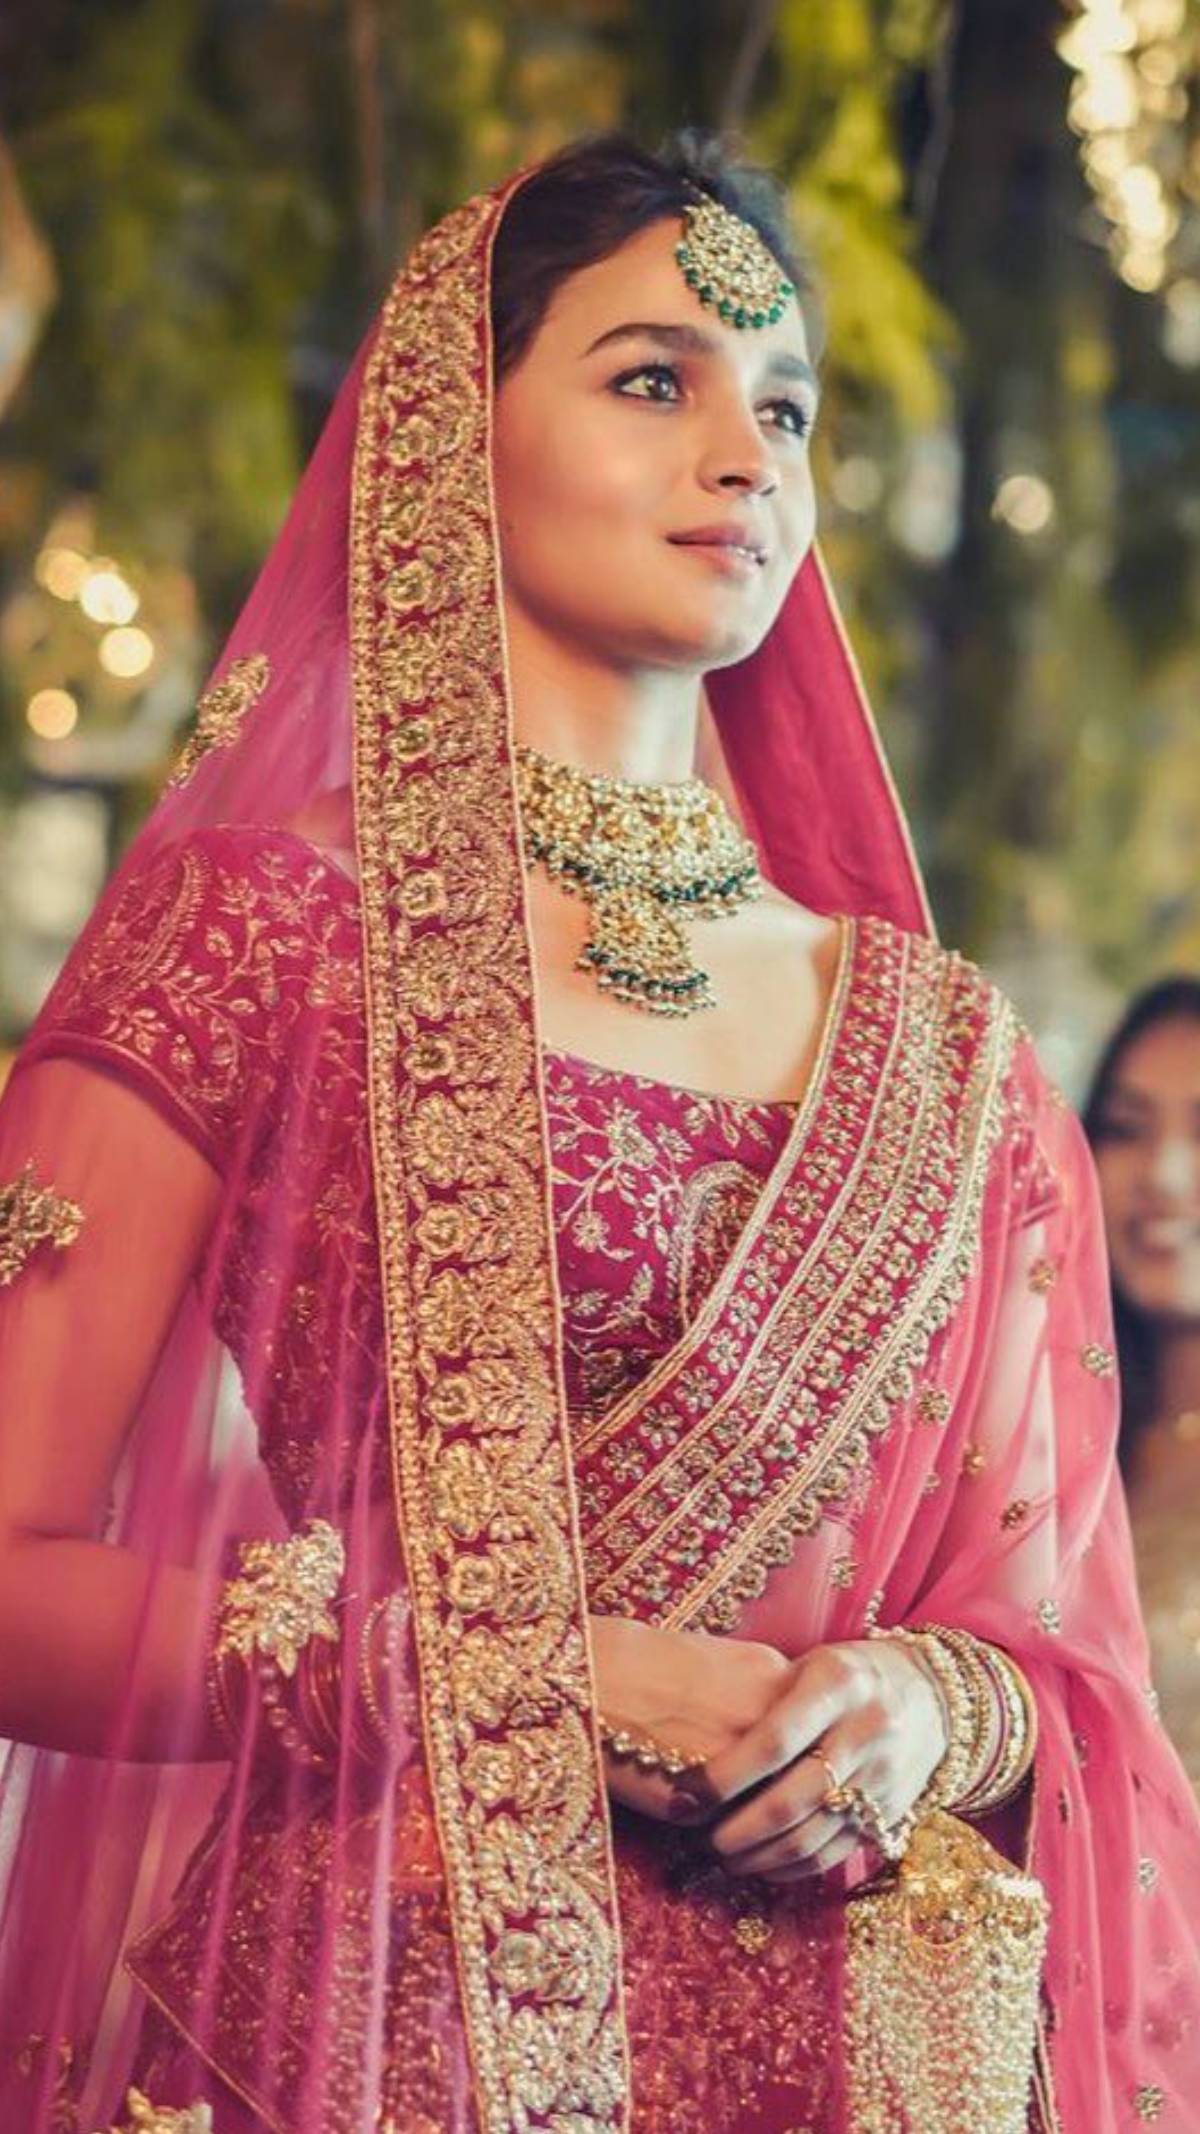 Alia Bhatt looks resplendent in the red bridal lehenga